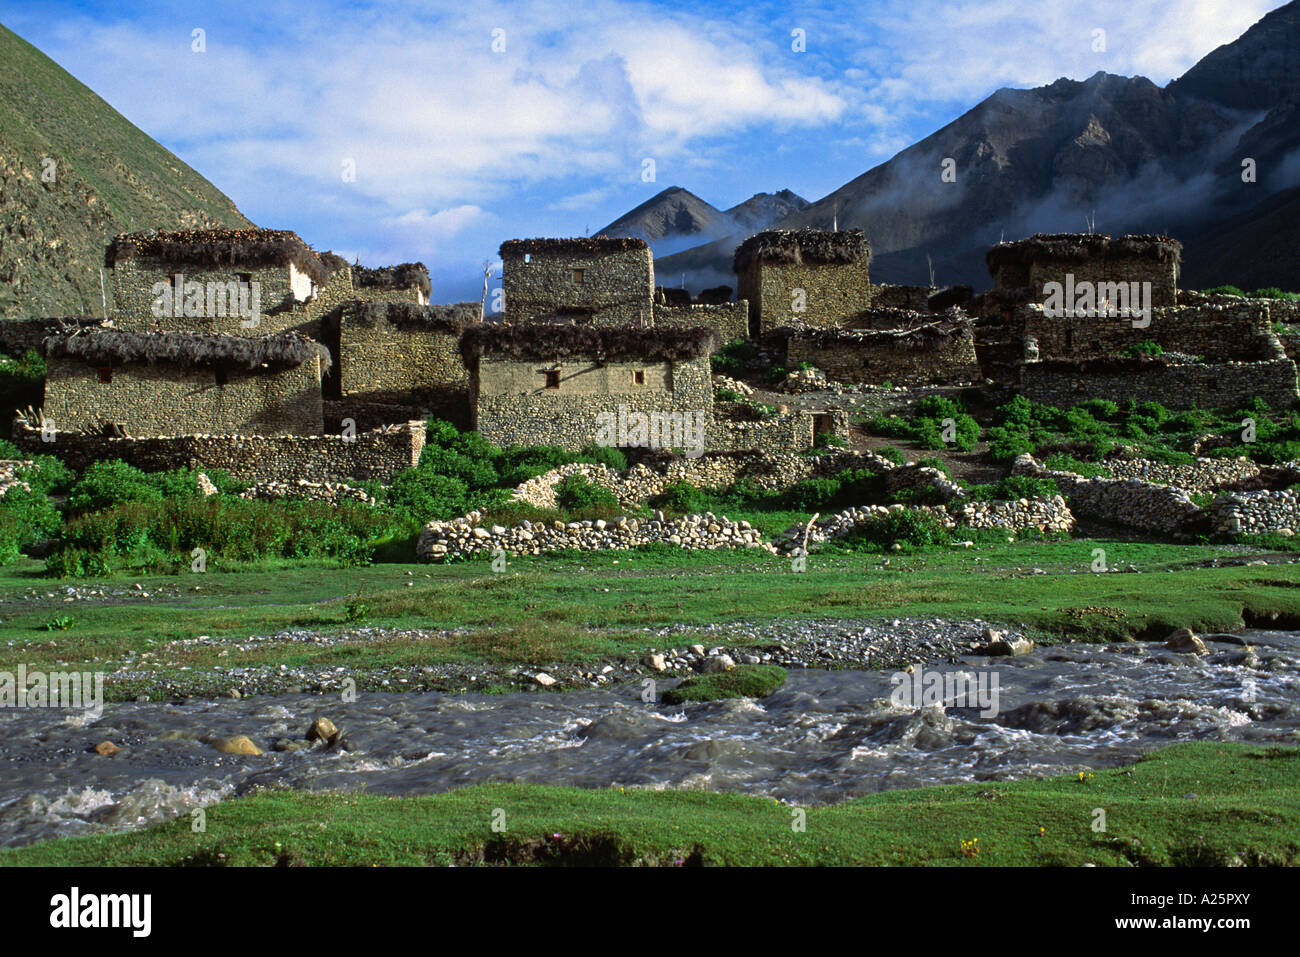 Il fiume TARAP corre passato fare villaggio nel fare TARAP VALLEY QUARTIERE DOLPO NEPAL Foto Stock